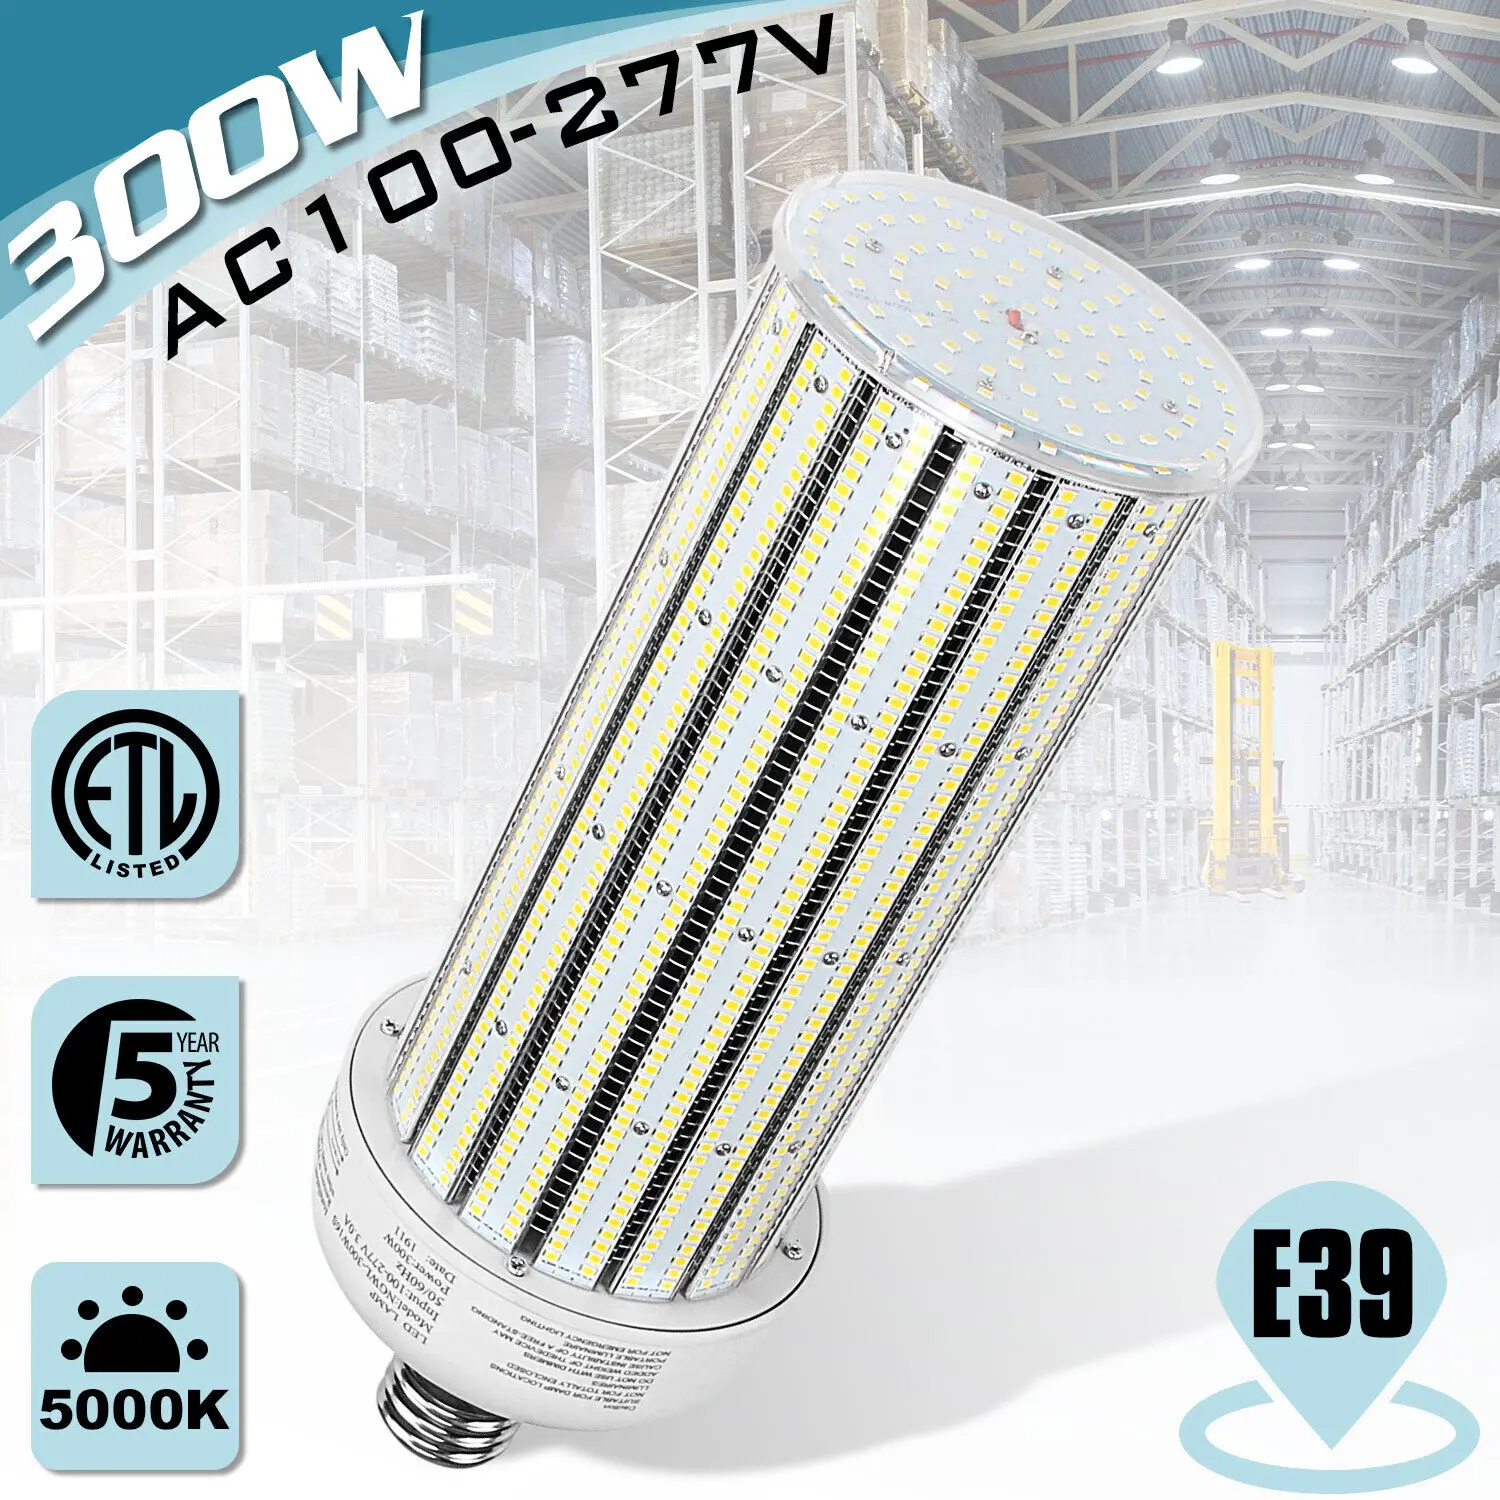 300W LED Corn Light Bulb Lamp, 40,000LM 6000K 100V~277V Super Bright Light for Indoor Large Area Garage barn Workshop Warehouse